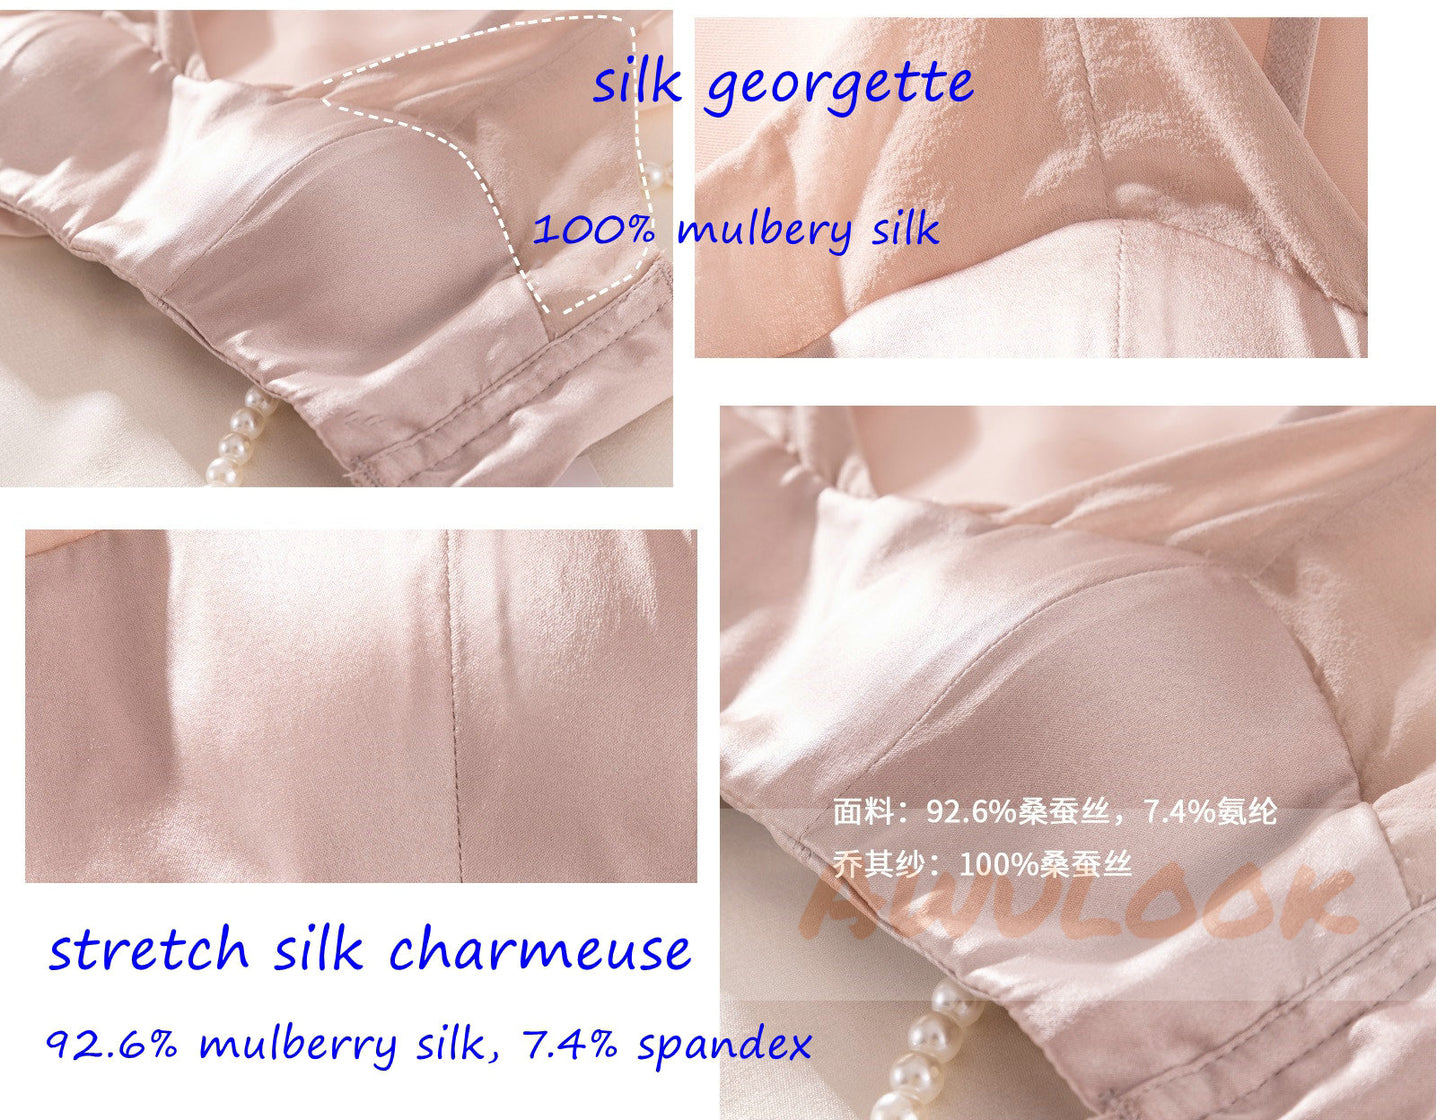 Summer Silk Georgette bra